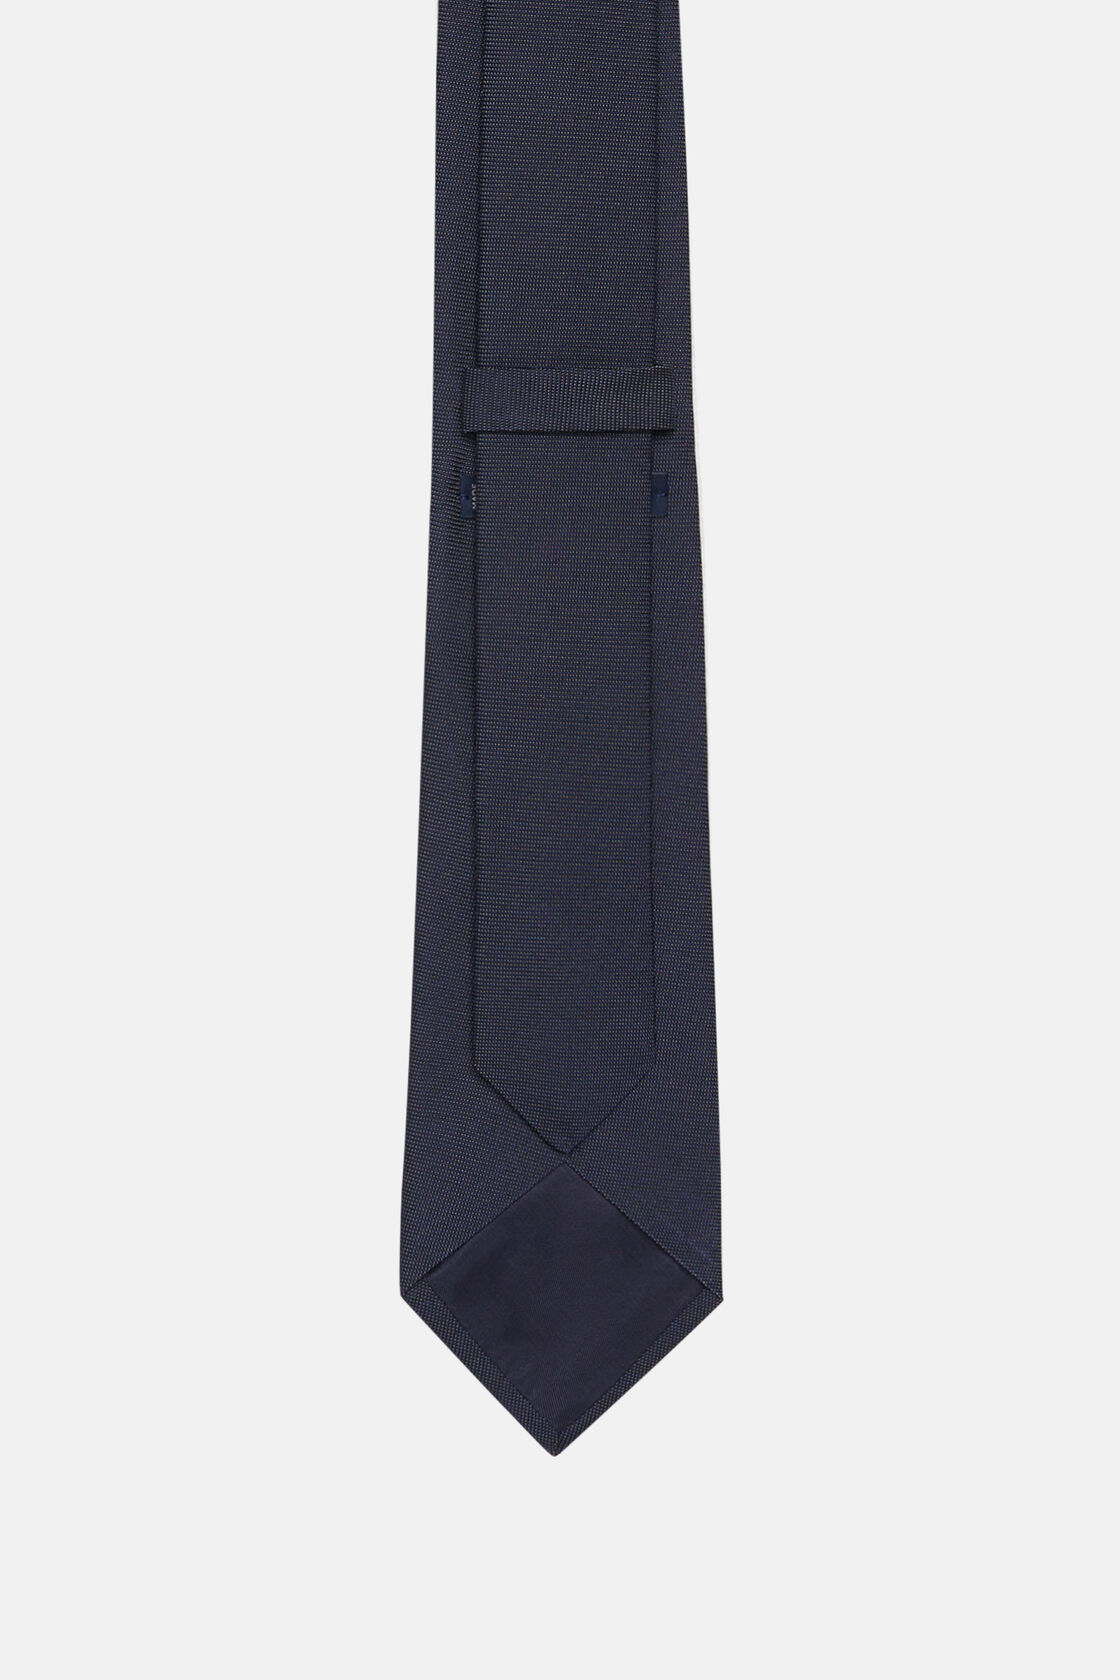 Mikro texturált selyem keverék nyakkendő, Navy blue, hi-res